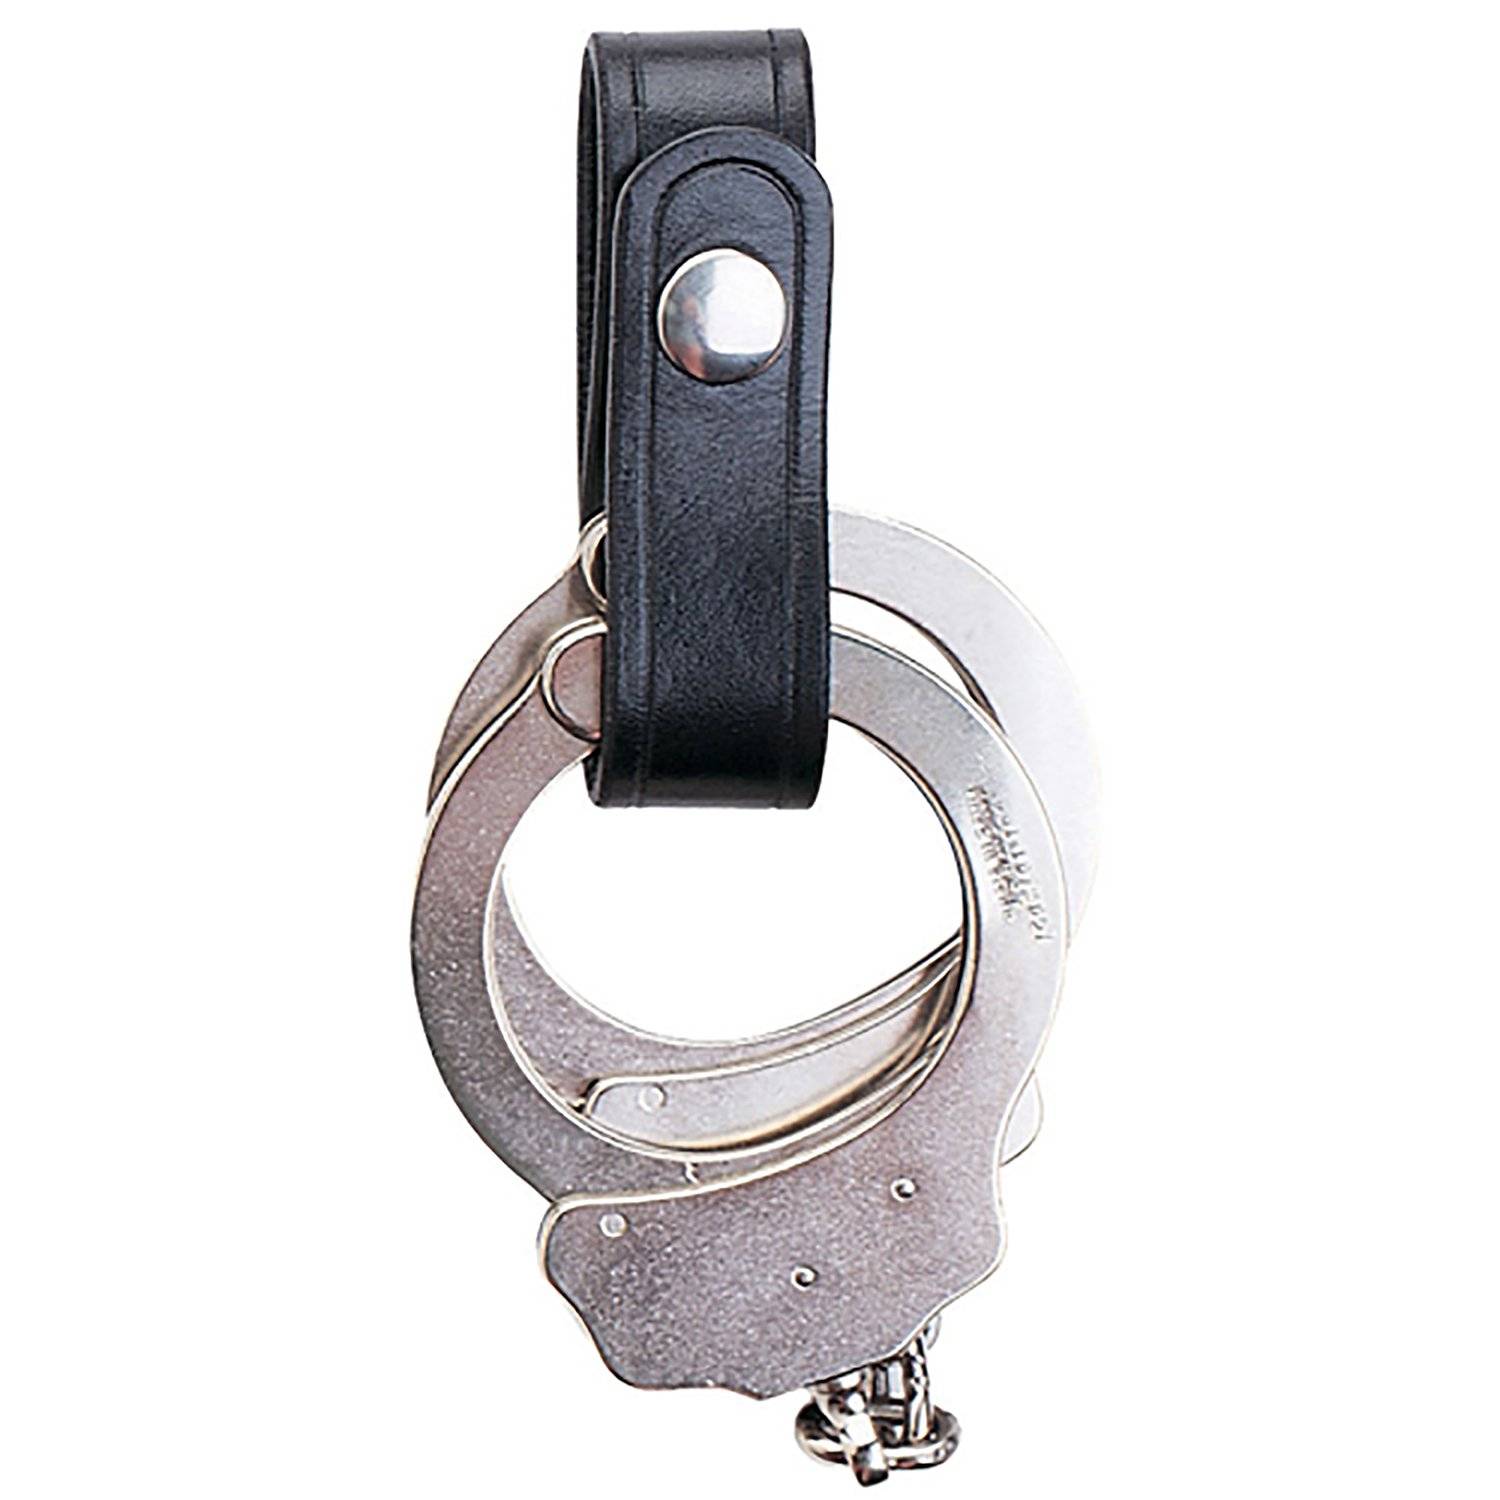 Safariland 690-2B Plain Handcuff Strap Single Brass Snap 